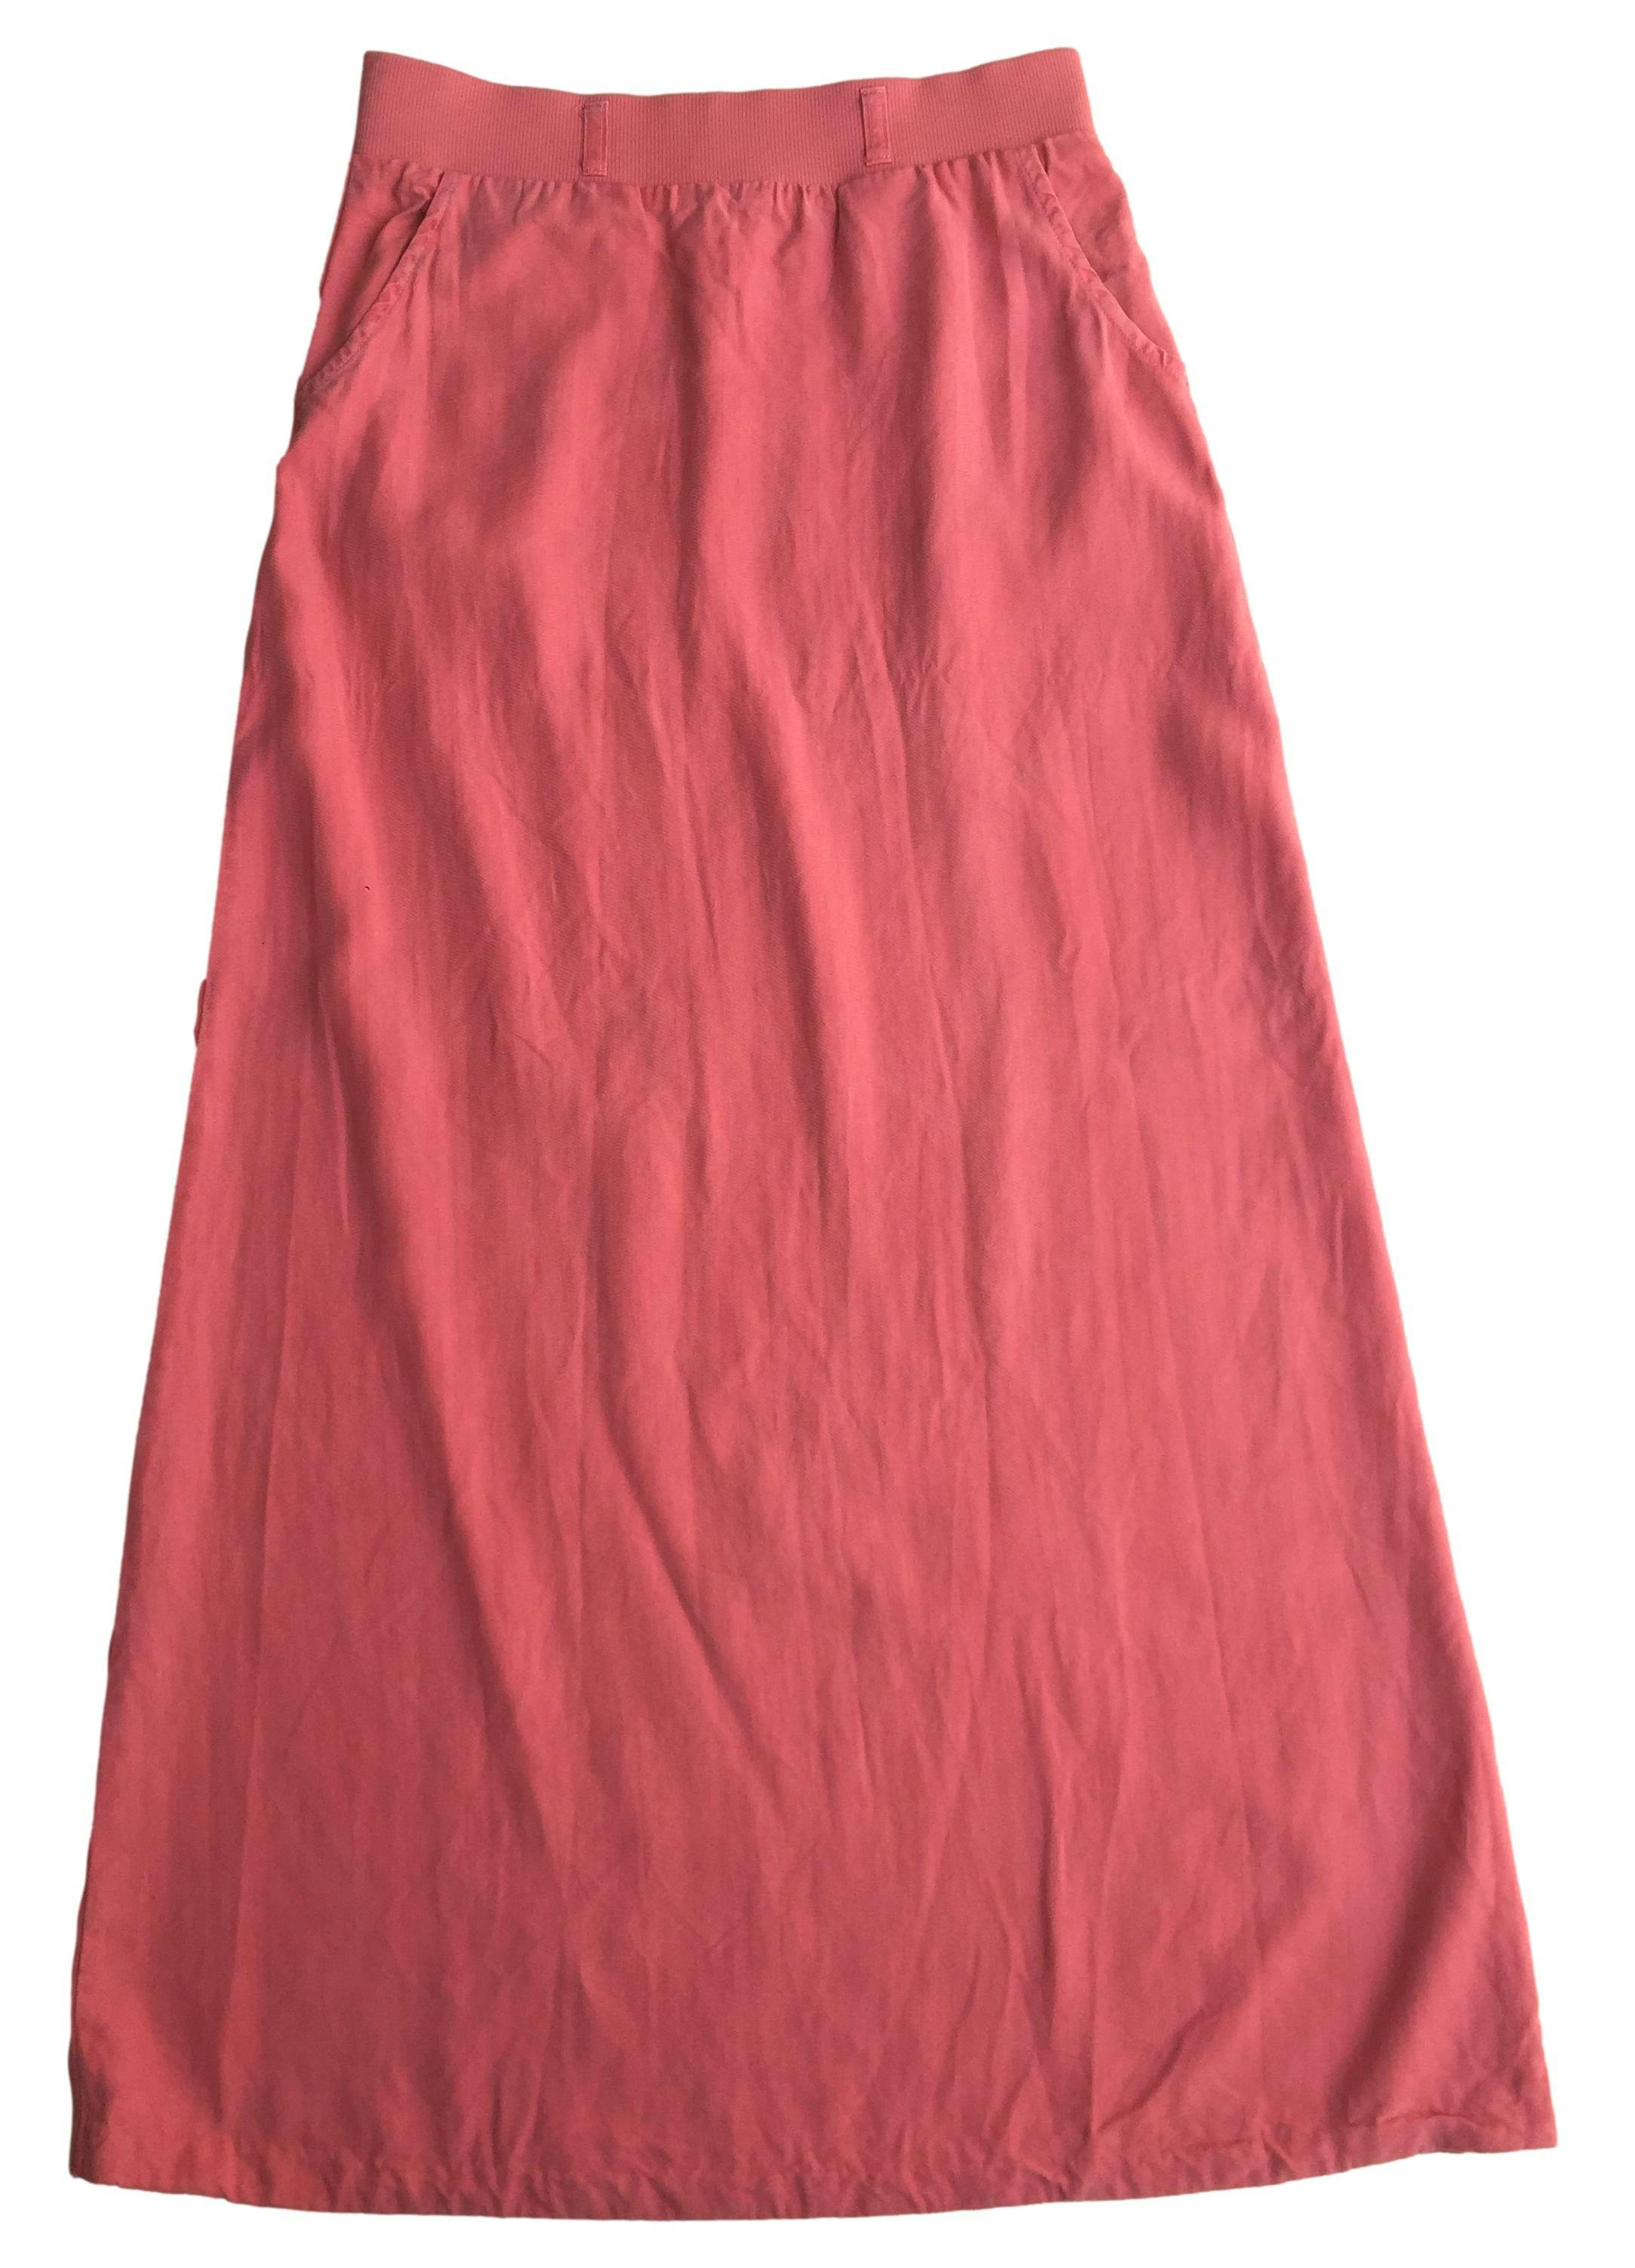 Maxi falda coral de tela ligera suave al tacto, tiene bolsillos y pretina elasticada. Cintura 74cm, Largo 107cm.